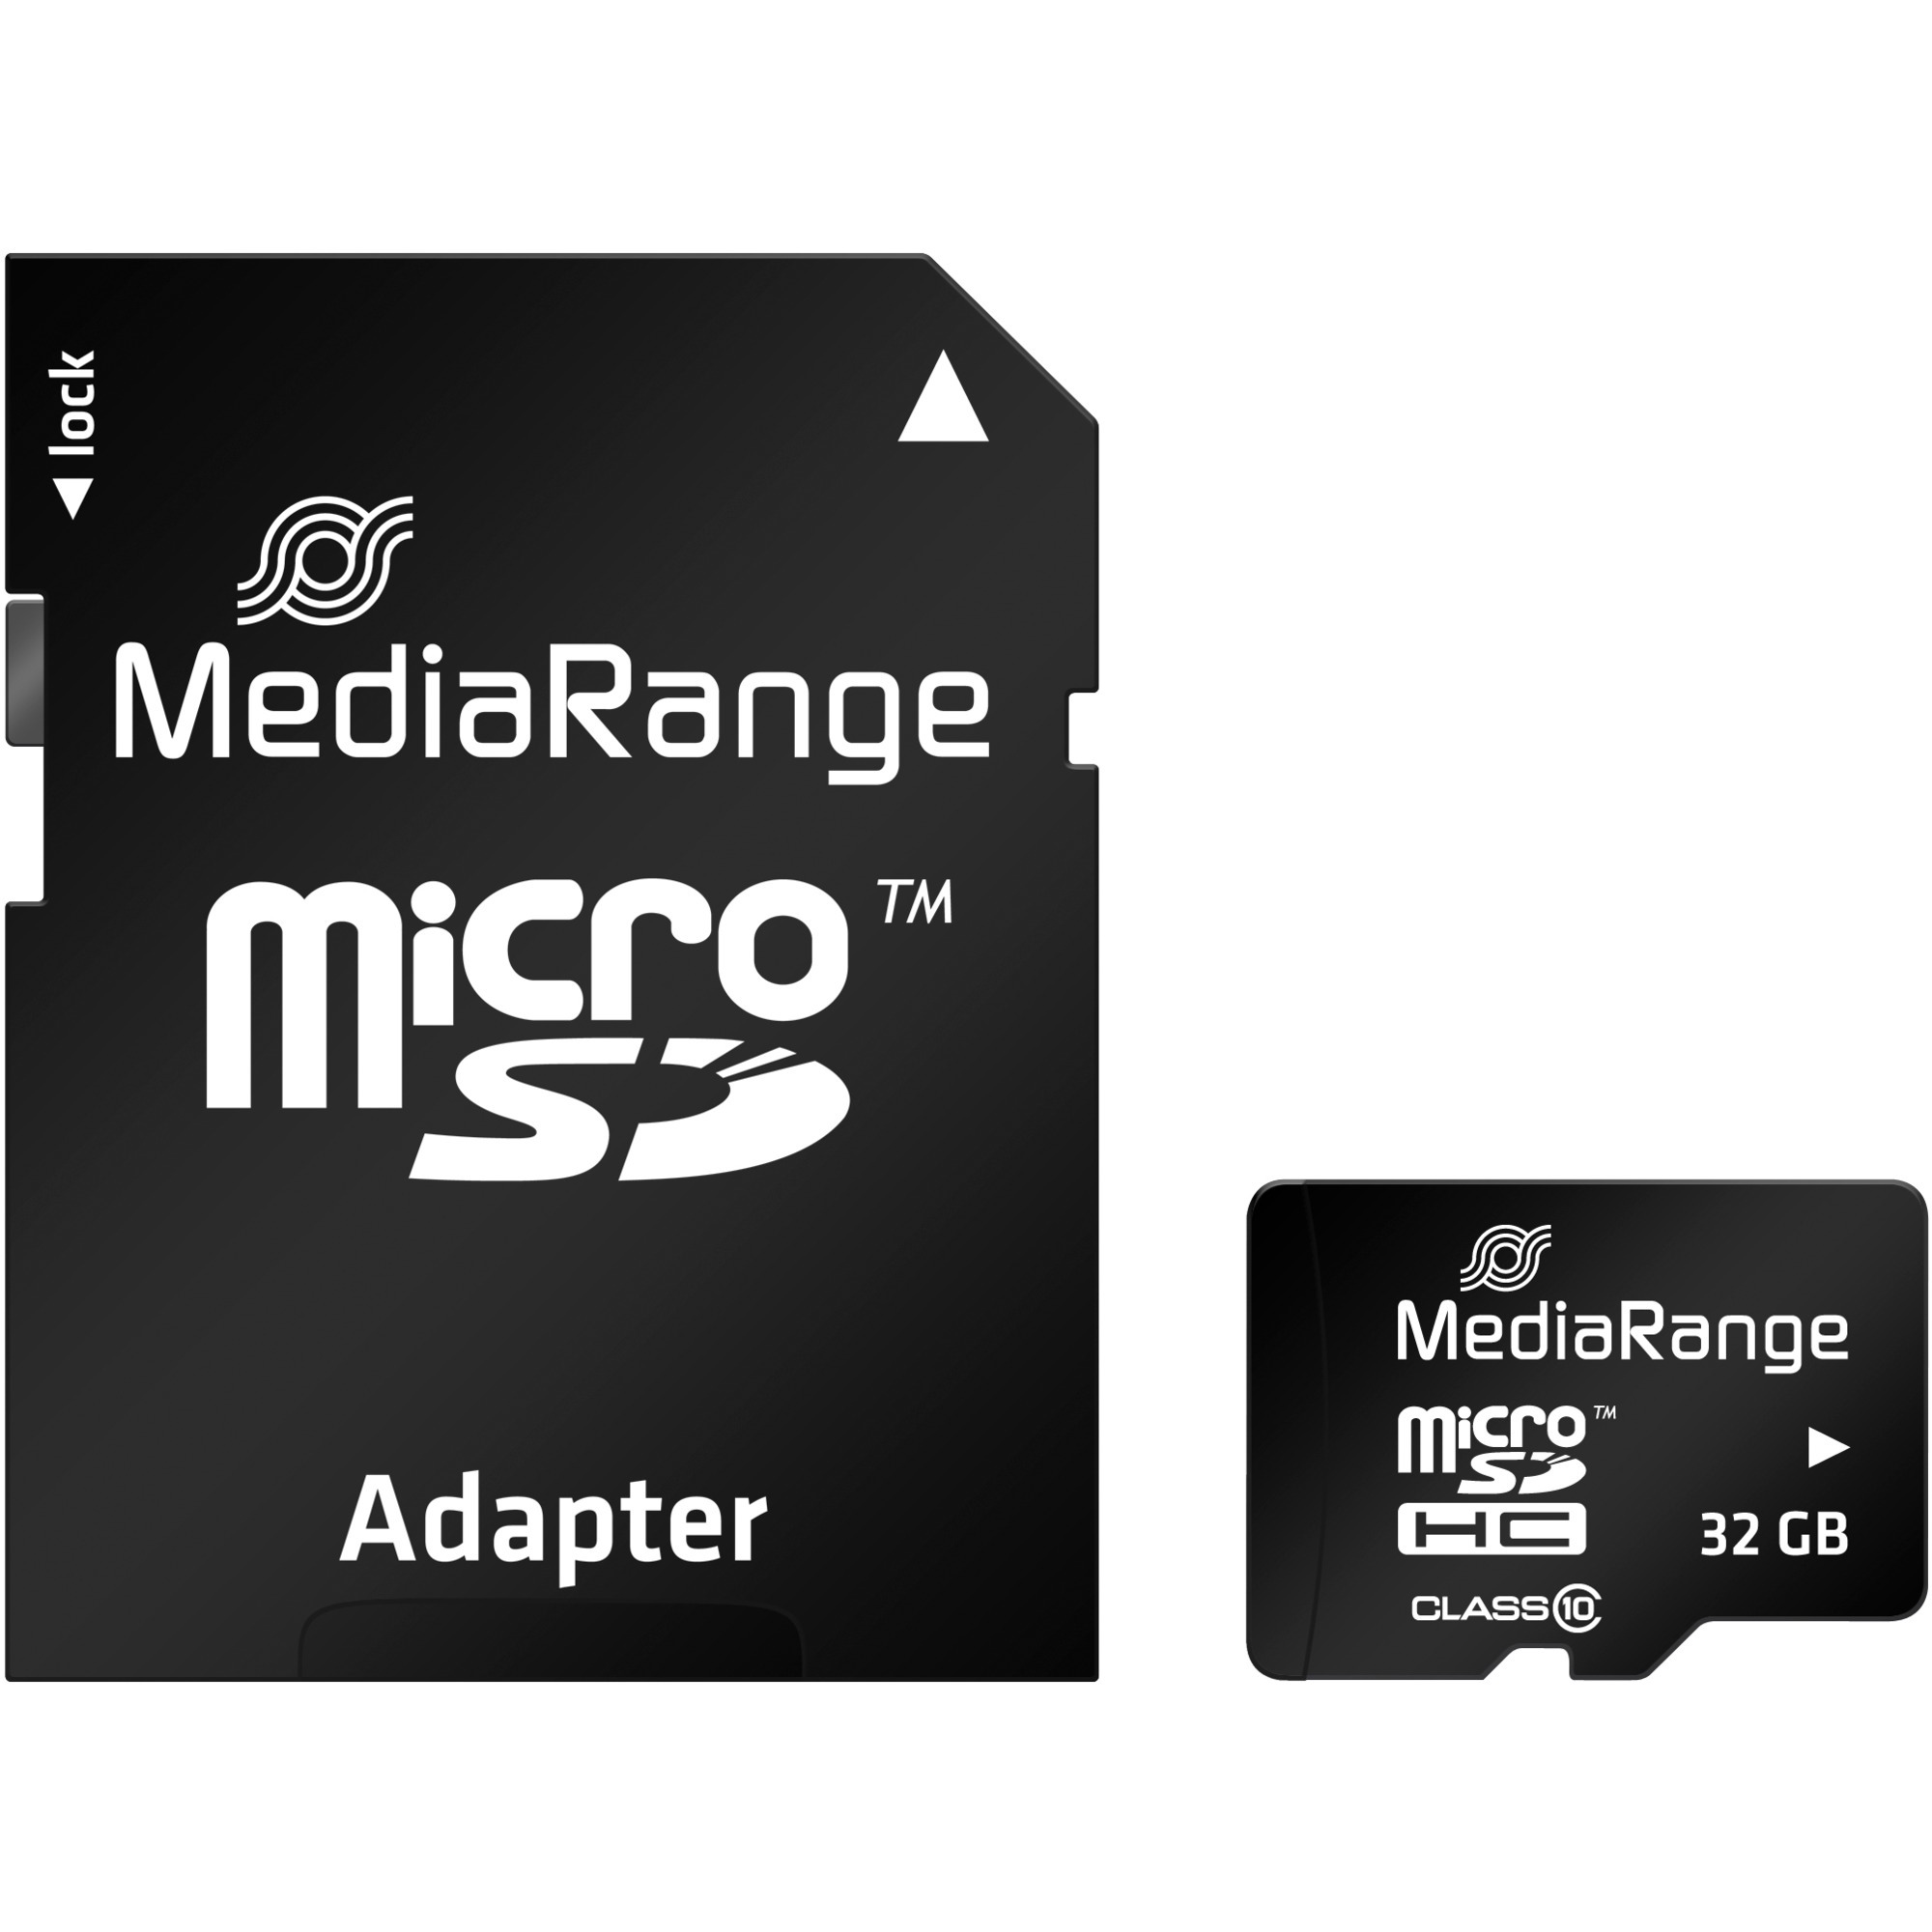 Image of Alternate - 32 GB microSDHC, Speicherkarte online einkaufen bei Alternate